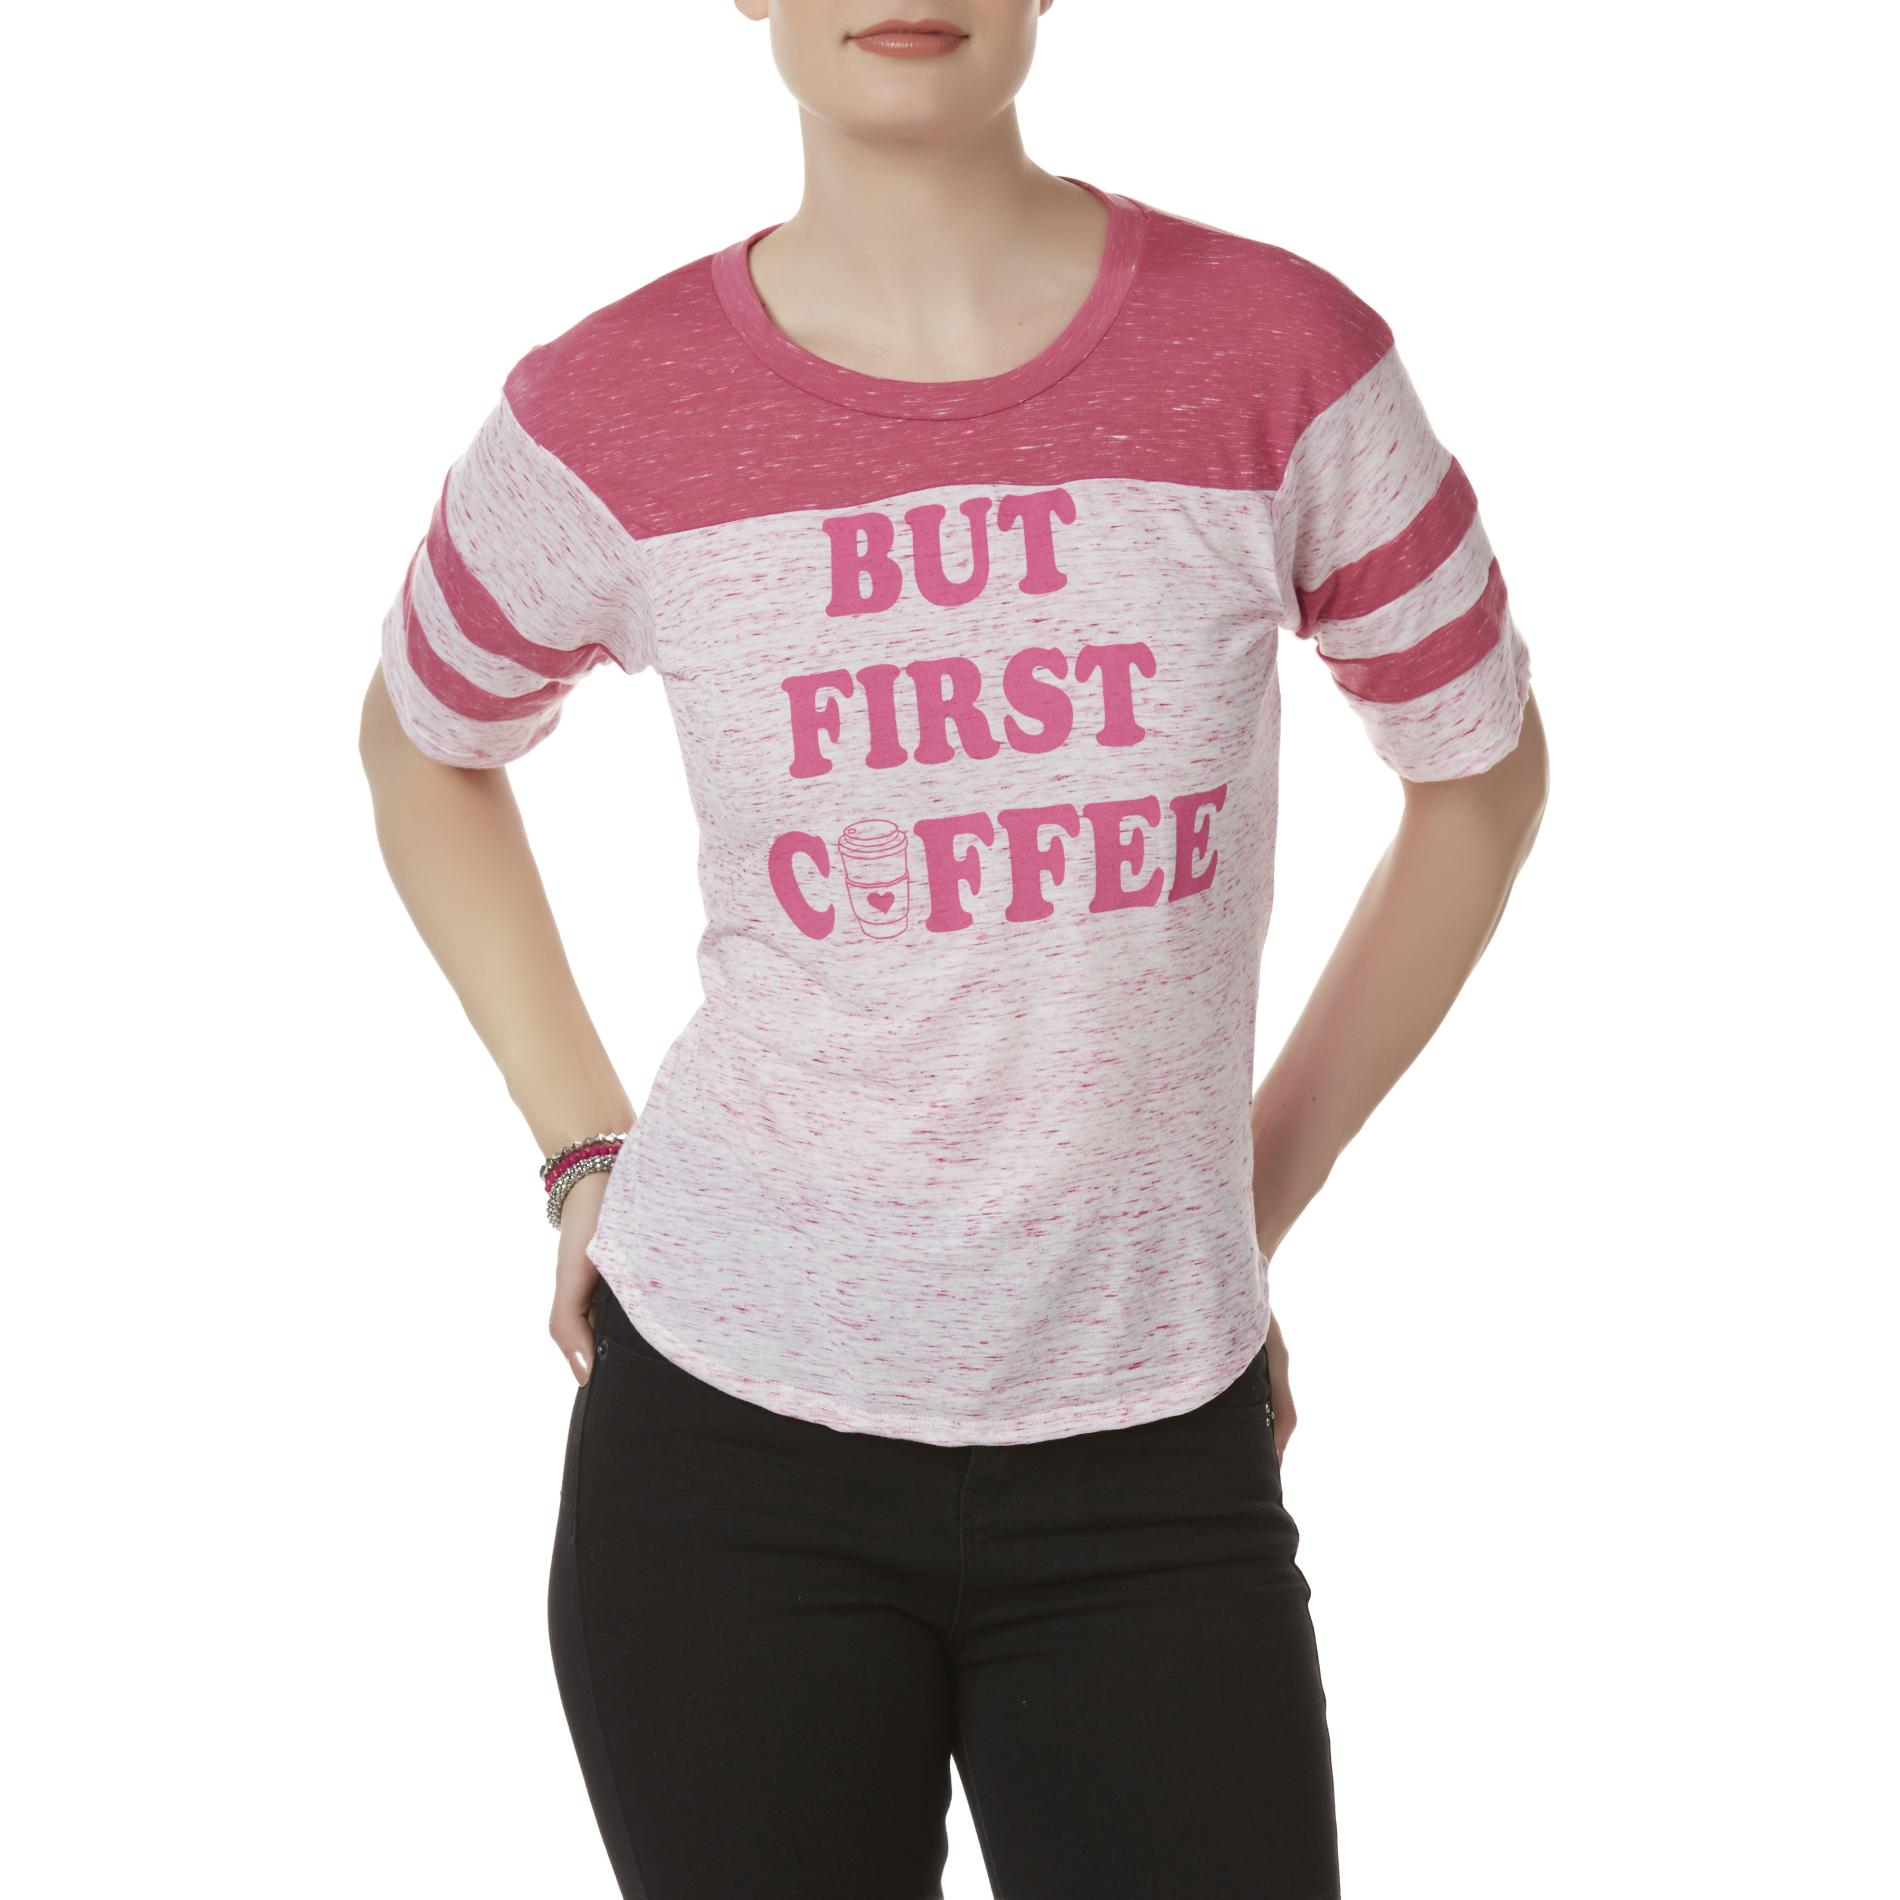 Joe Boxer Juniors' Football Jersey T-Shirt - But First Coffee